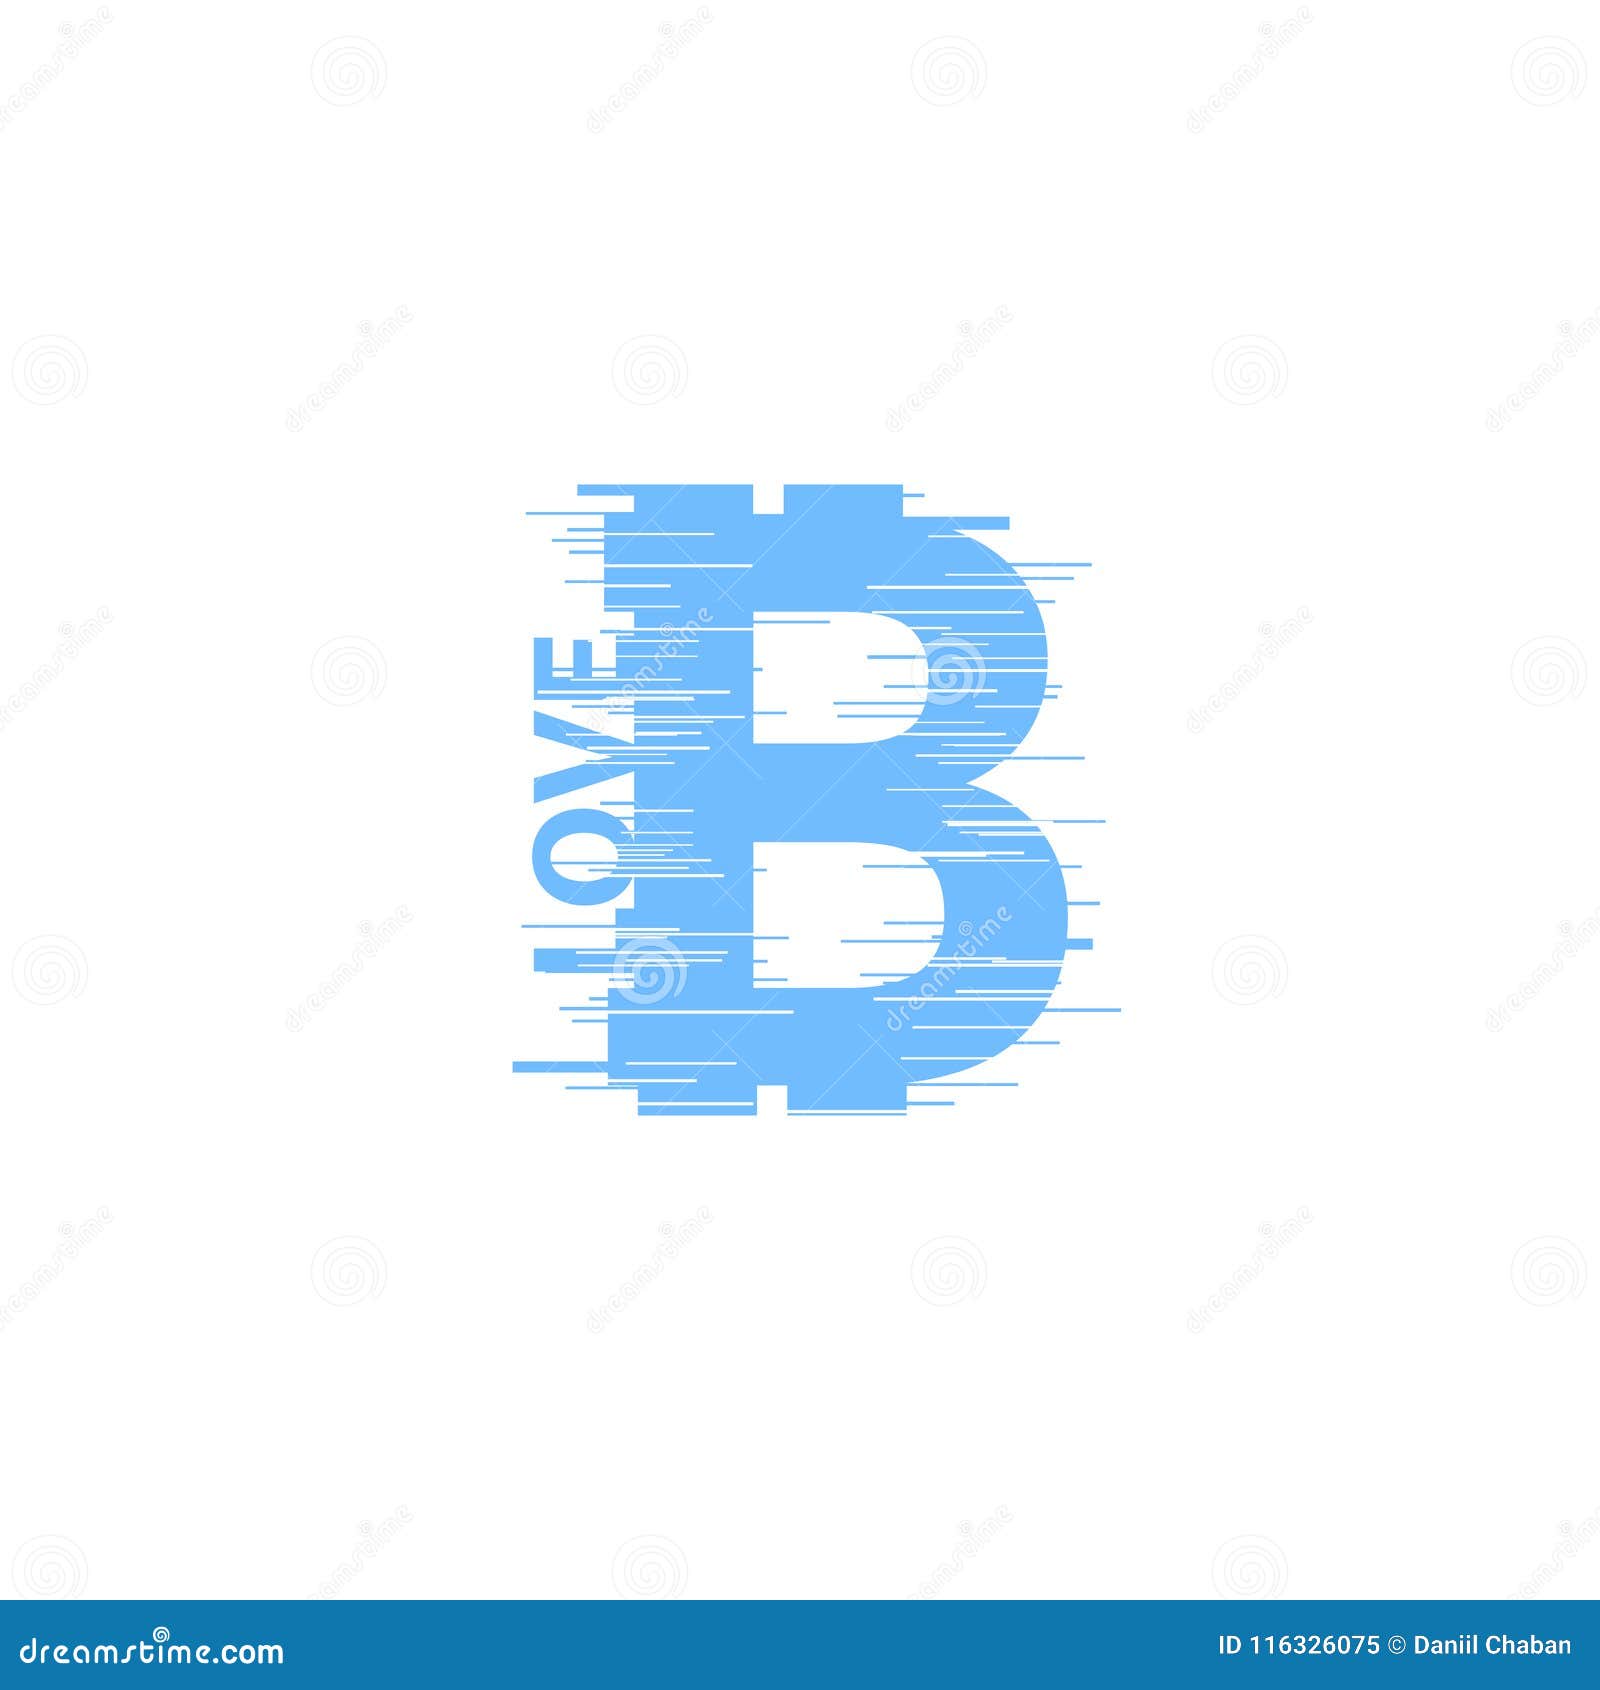 Il bitcoin blu firma dentro lo stile di impulso errato su fondo bianco Illustrazione digitale di vettore dei soldi di Internet Ef